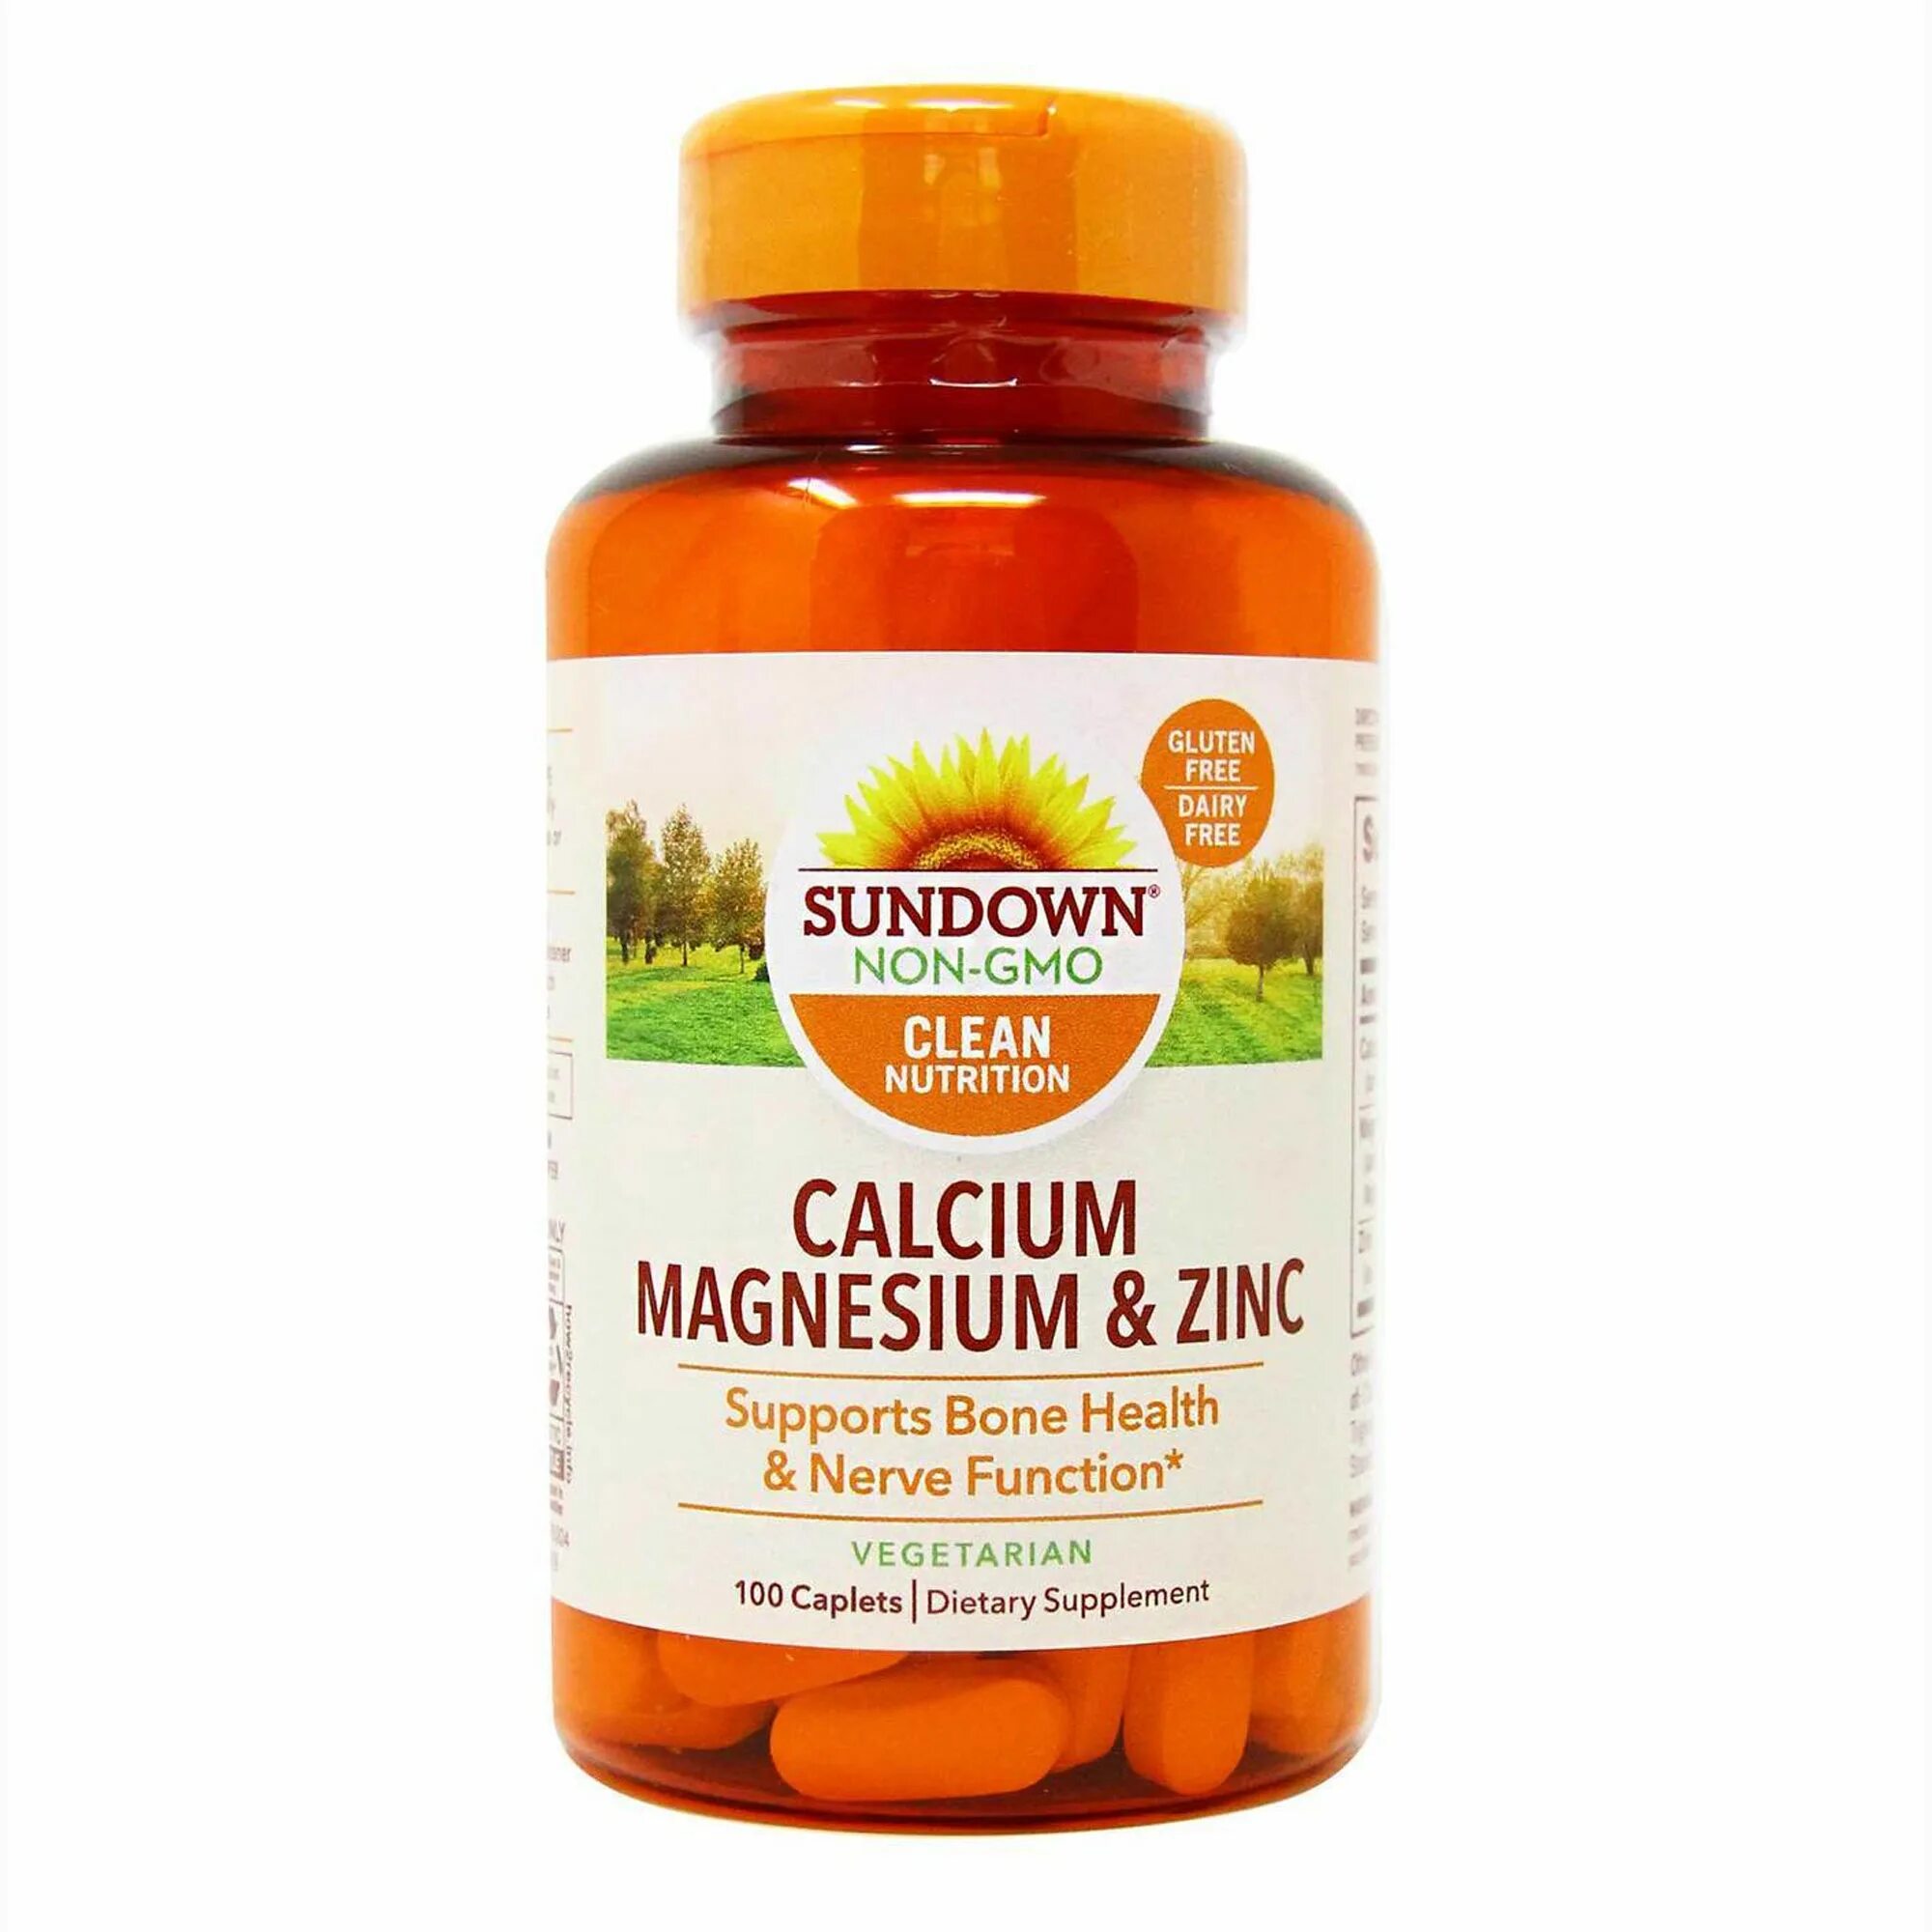 Как принимать витамин кальций магний. Витамины Calcium Magnesium Zinc. Sundown Calcium Magnesium Zinc. Sundown витамины Magnesium & Zink. Кальций-магний-цинк/Calcium Magnesium Plus Zinc.